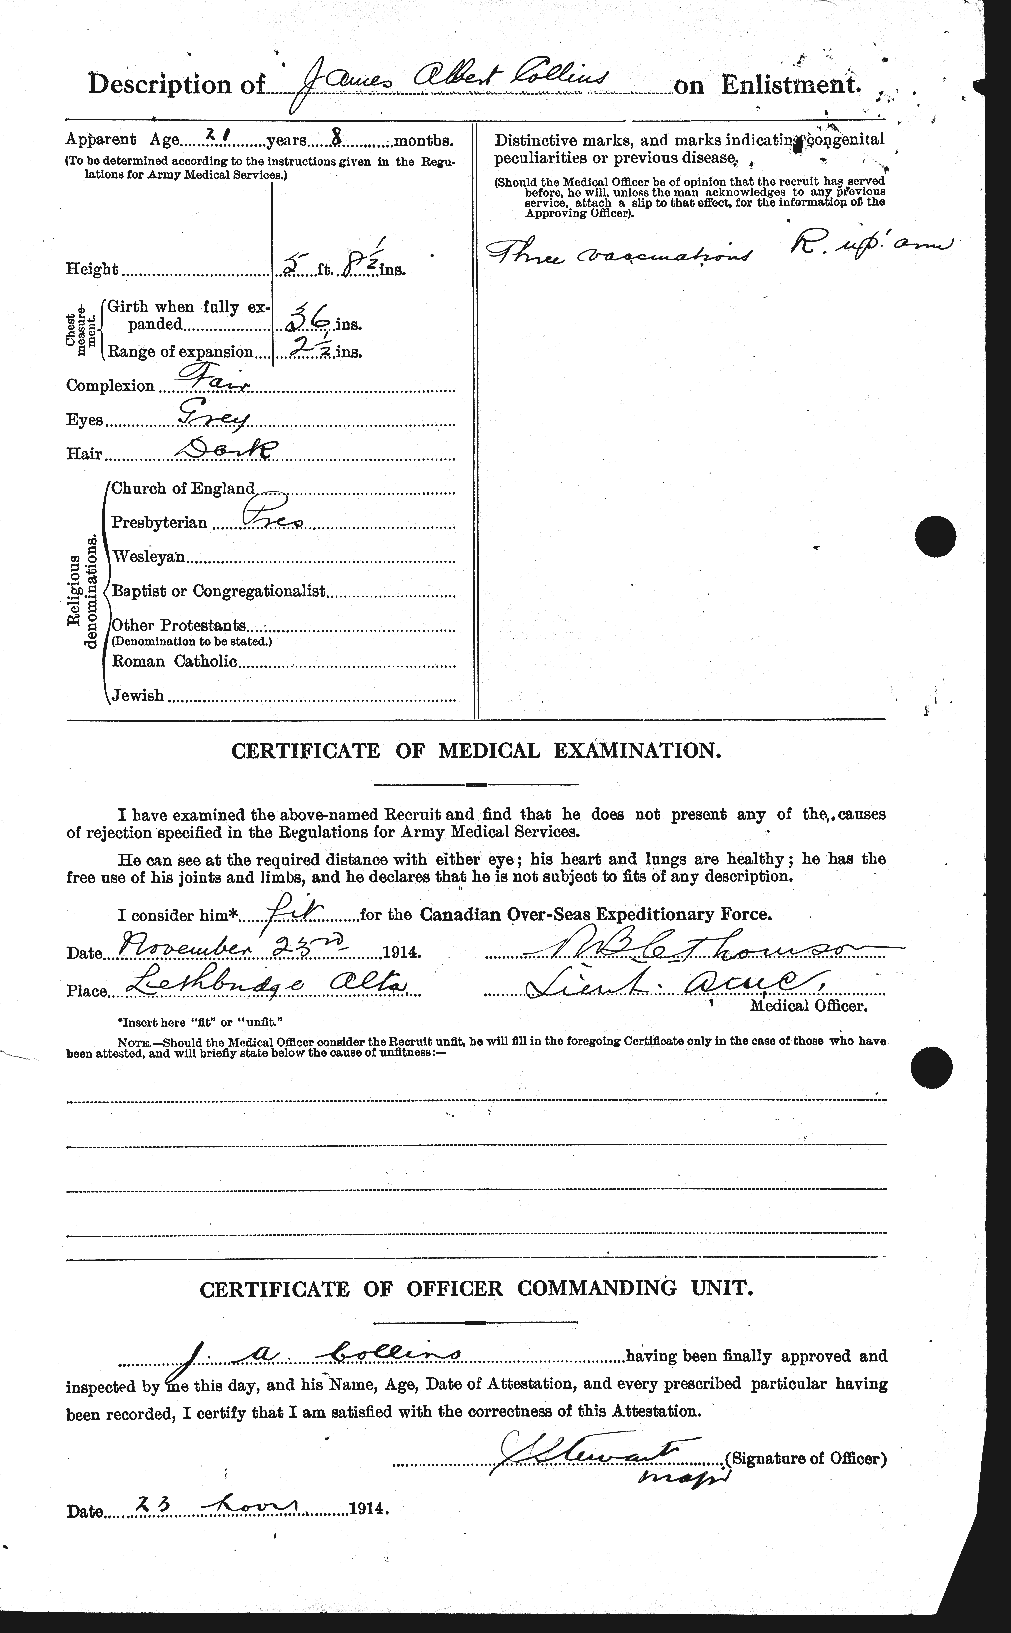 Dossiers du Personnel de la Première Guerre mondiale - CEC 069959b